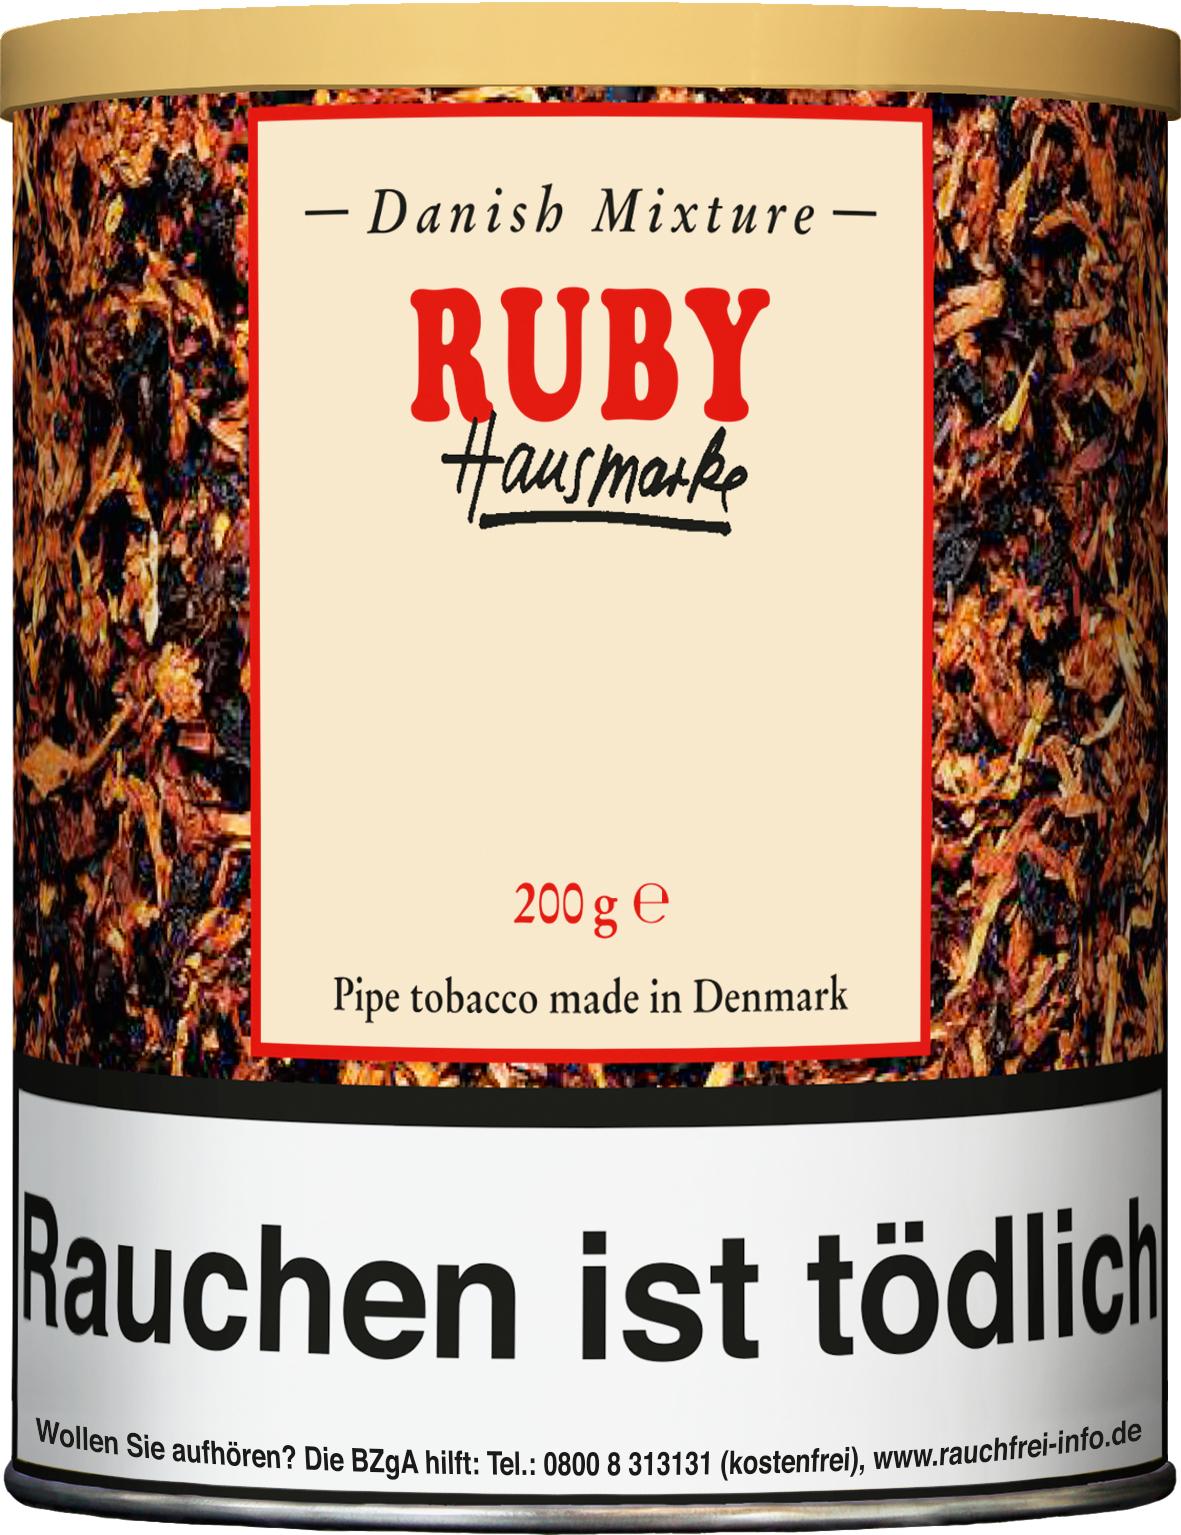 Danish Mixture Ruby 1 x 200g Pfeifentabak 200g